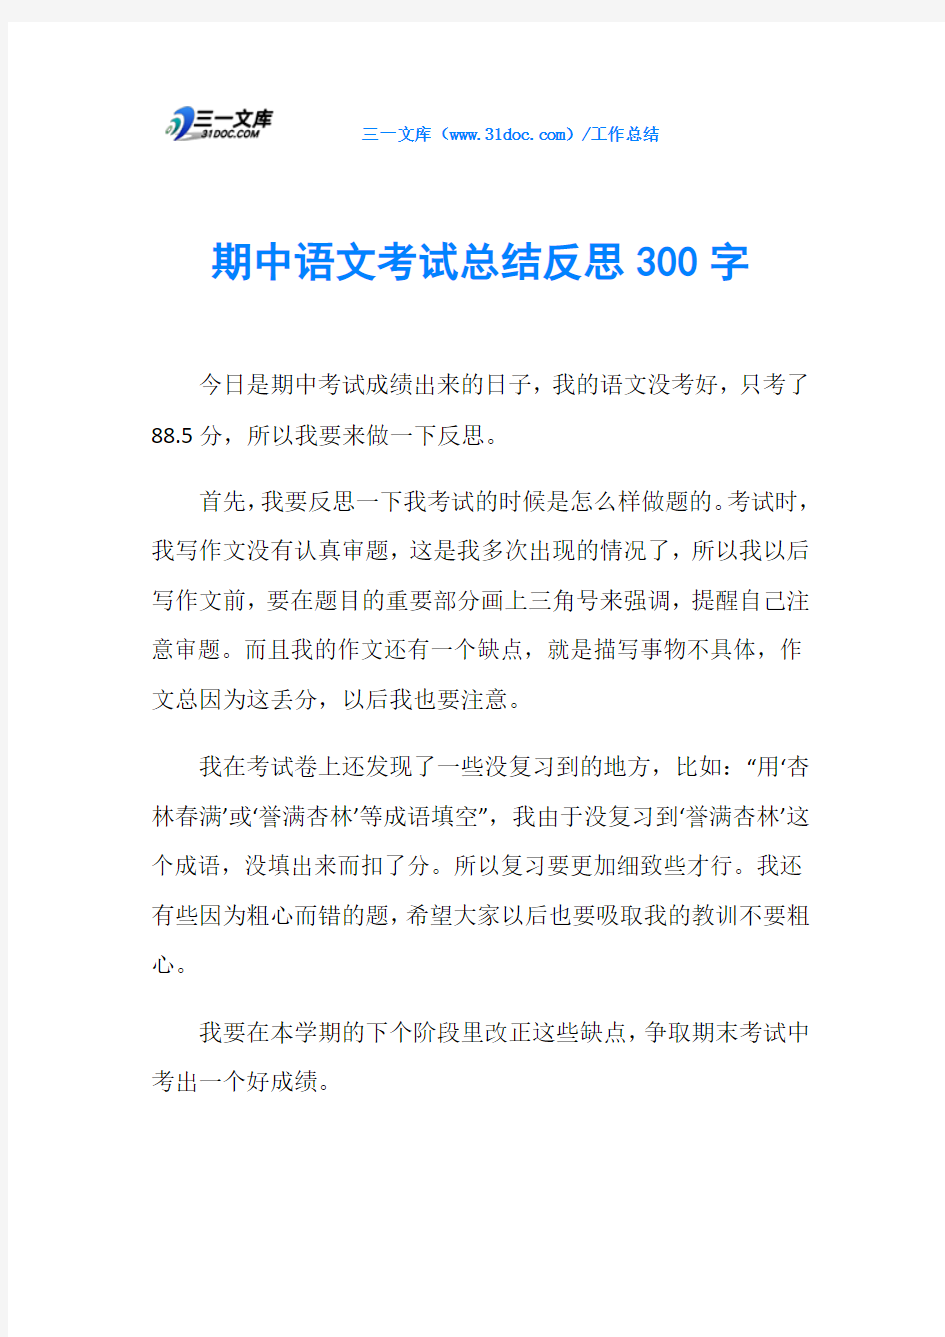 期中语文考试总结反思300字